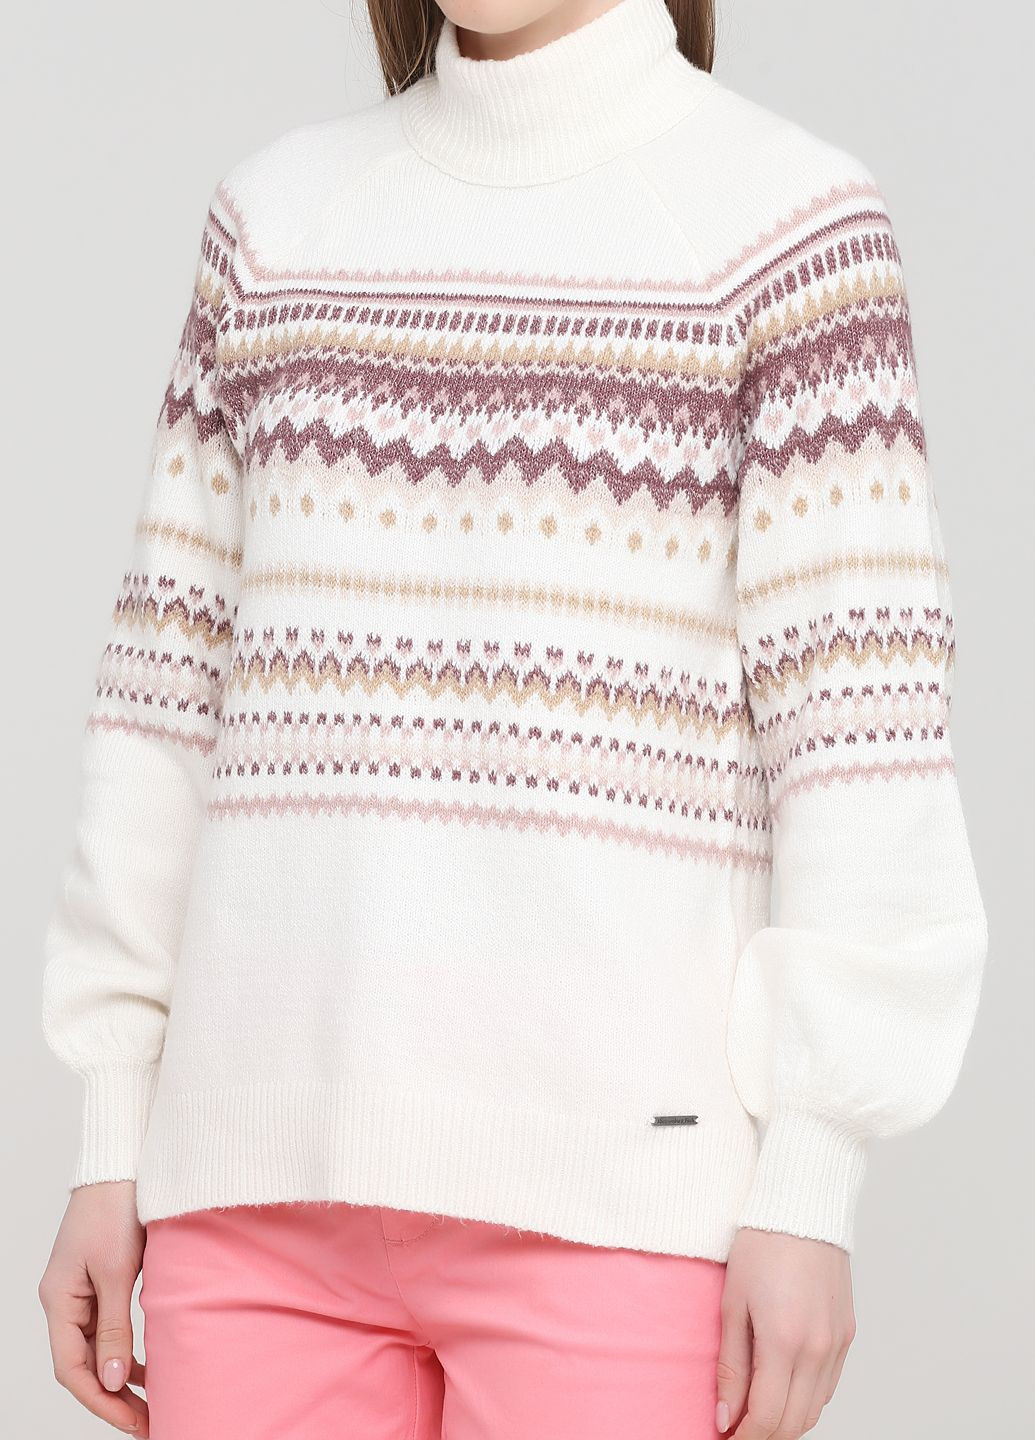 Молочний демісезонний светр жіночий - светр af8119w Abercrombie & Fitch